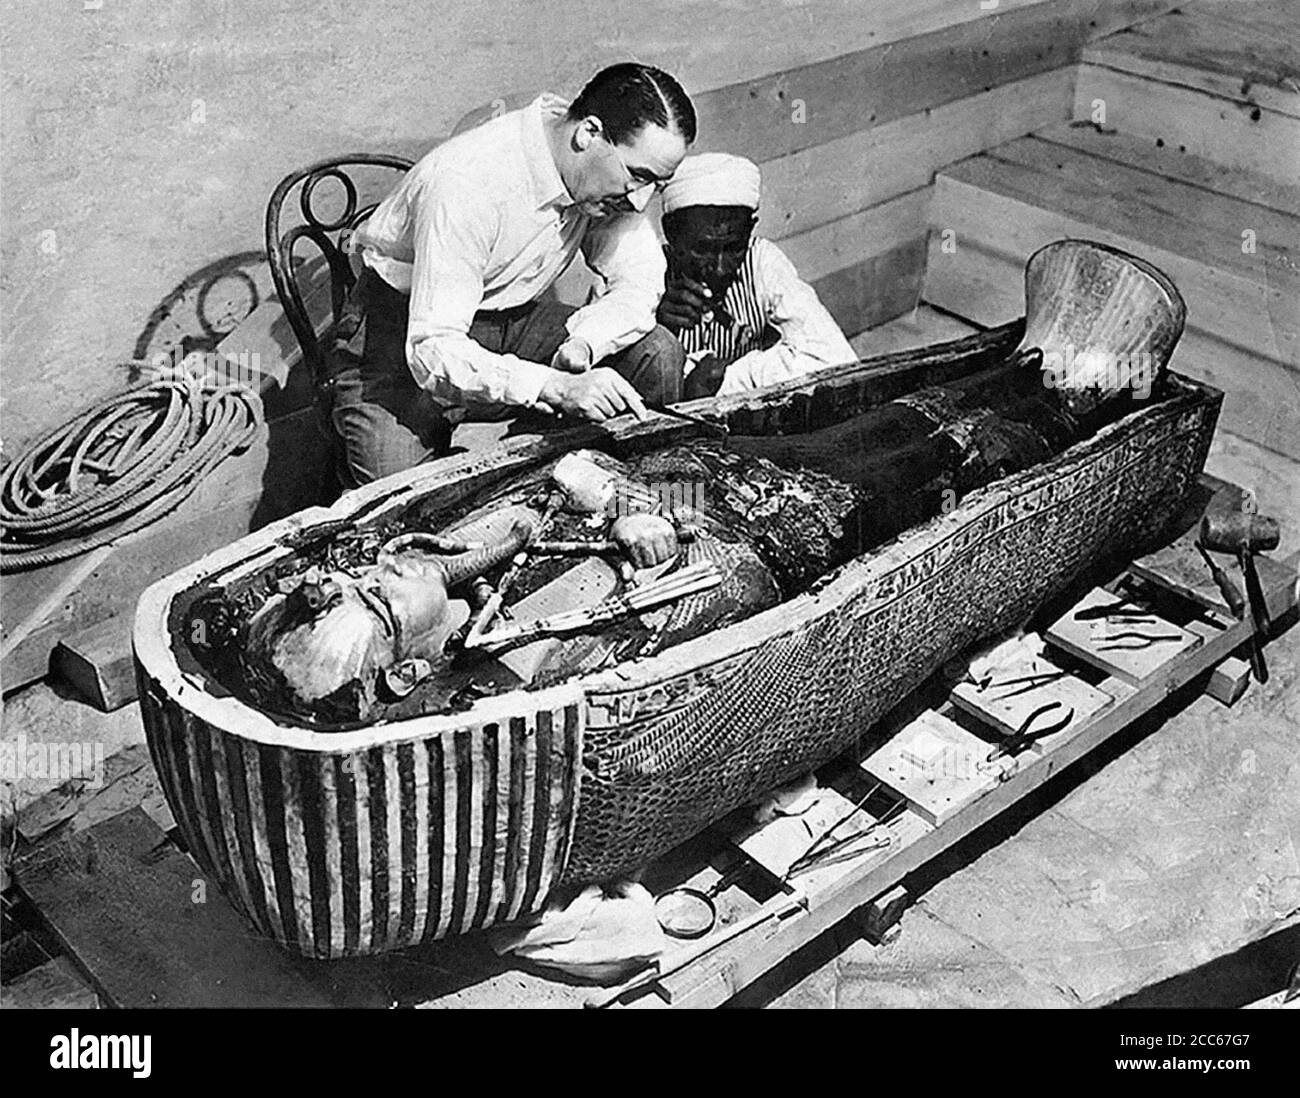 Tombeau de Toutankhamon. Howard carter examinant le sarcophage du tombeau du roi Toutankhamon, Louxor, Égypte. Photo prise par Harry Burton en 1922 Banque D'Images